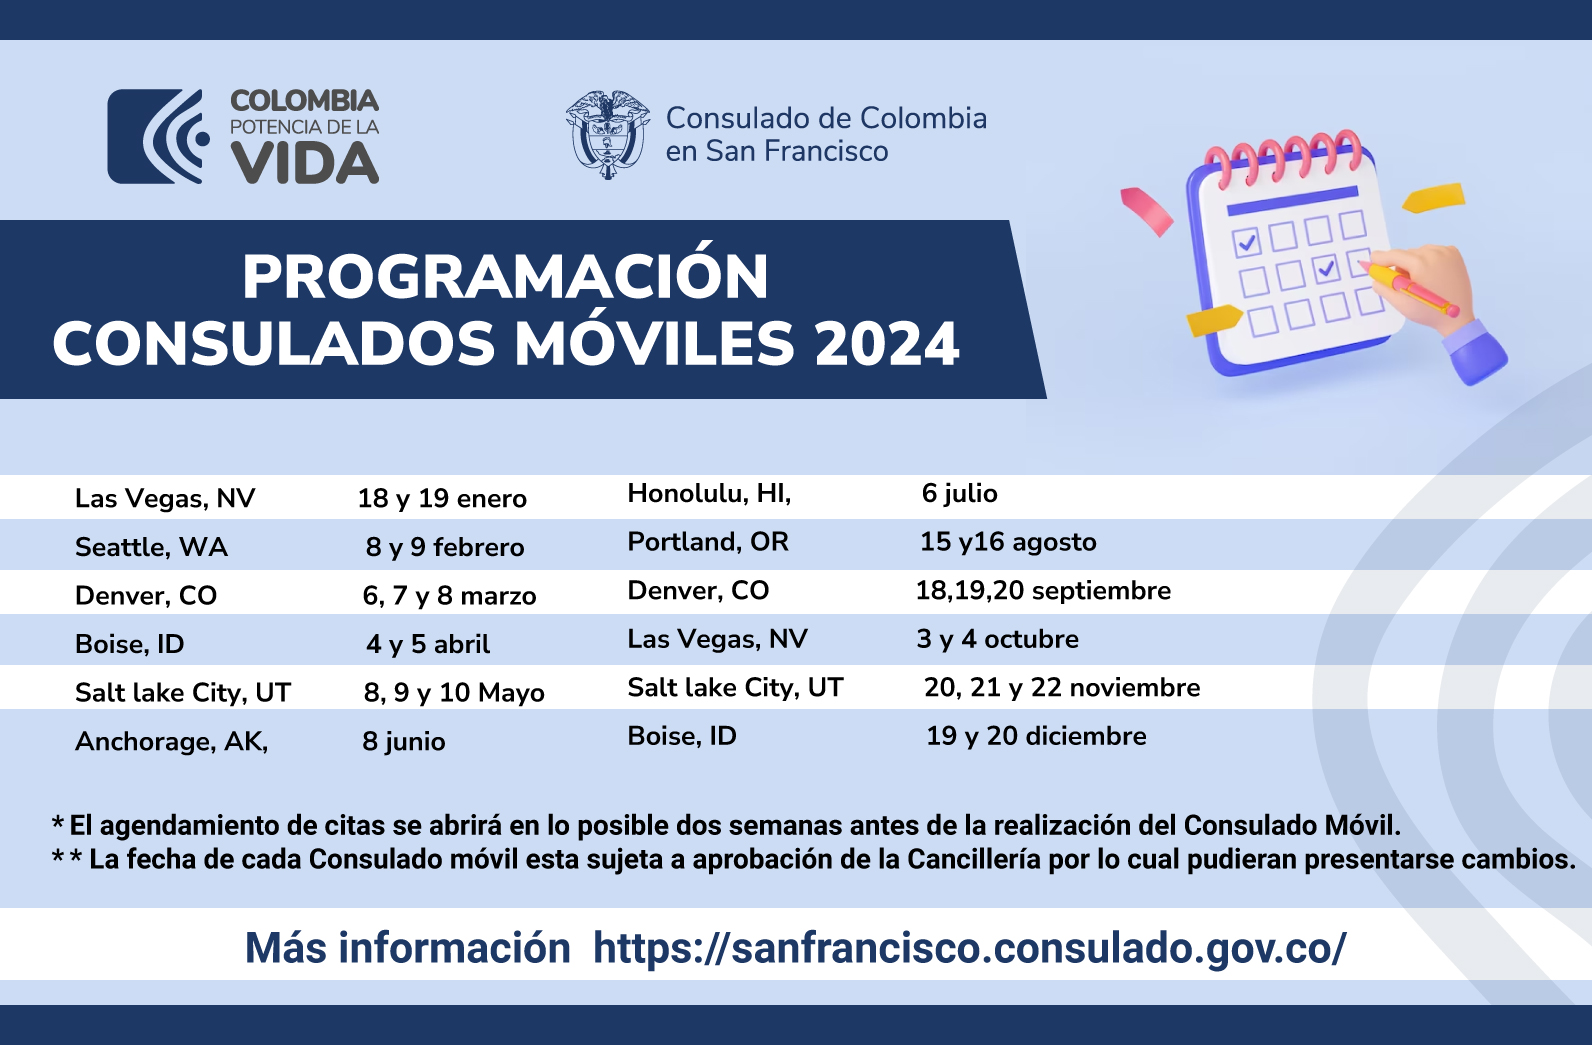 Calendario de Consulados Móviles programados para 2024 Consulado de